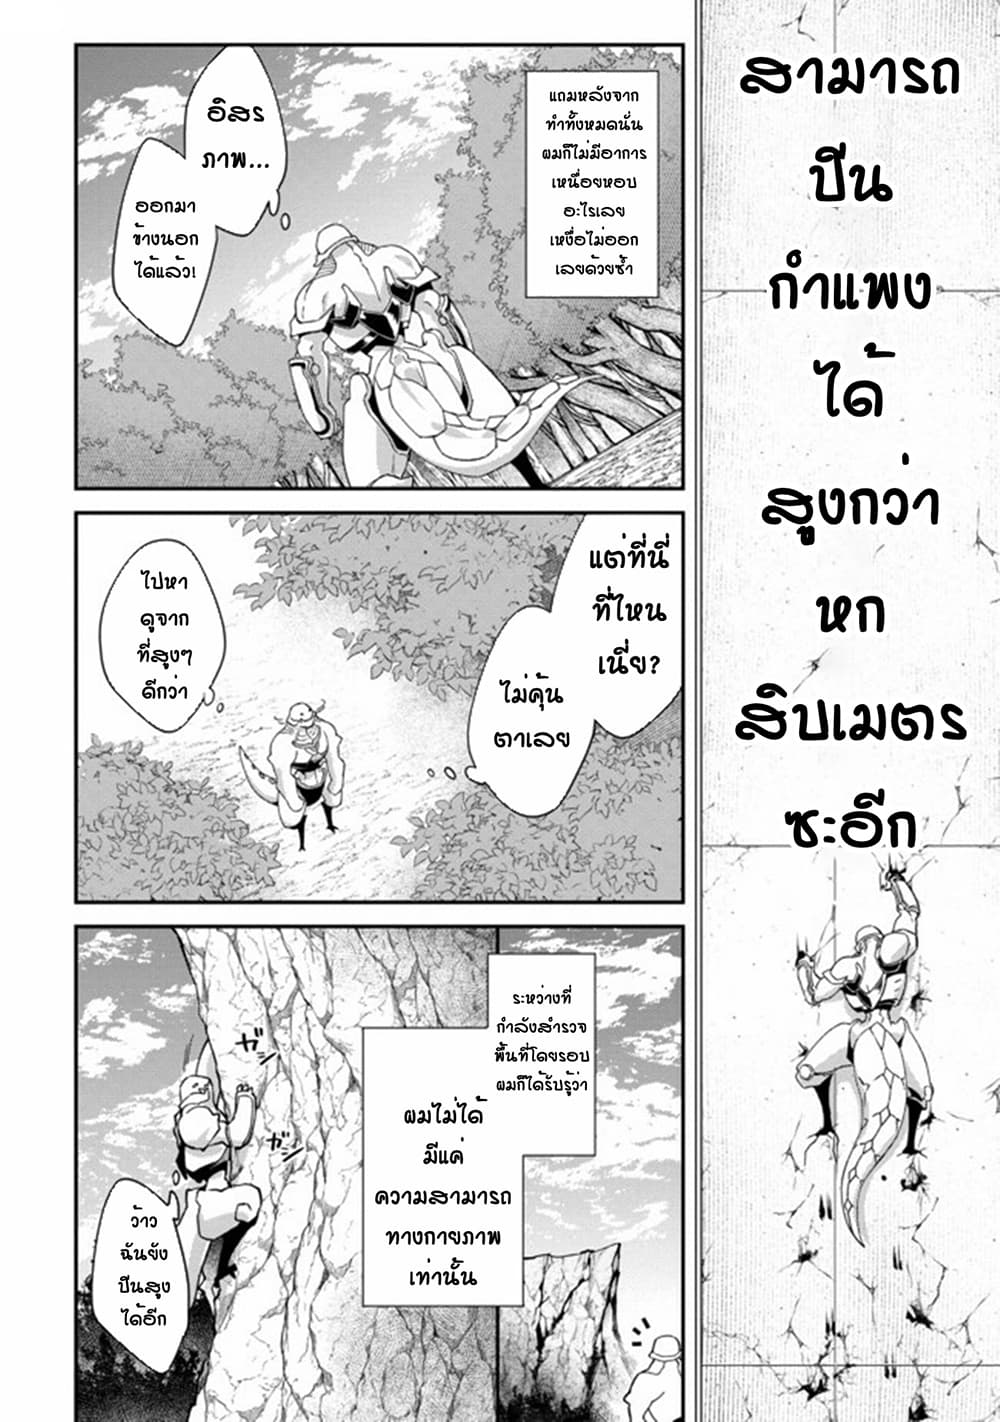 Bonkotsu Shinpei No Monster Life 1 (14)